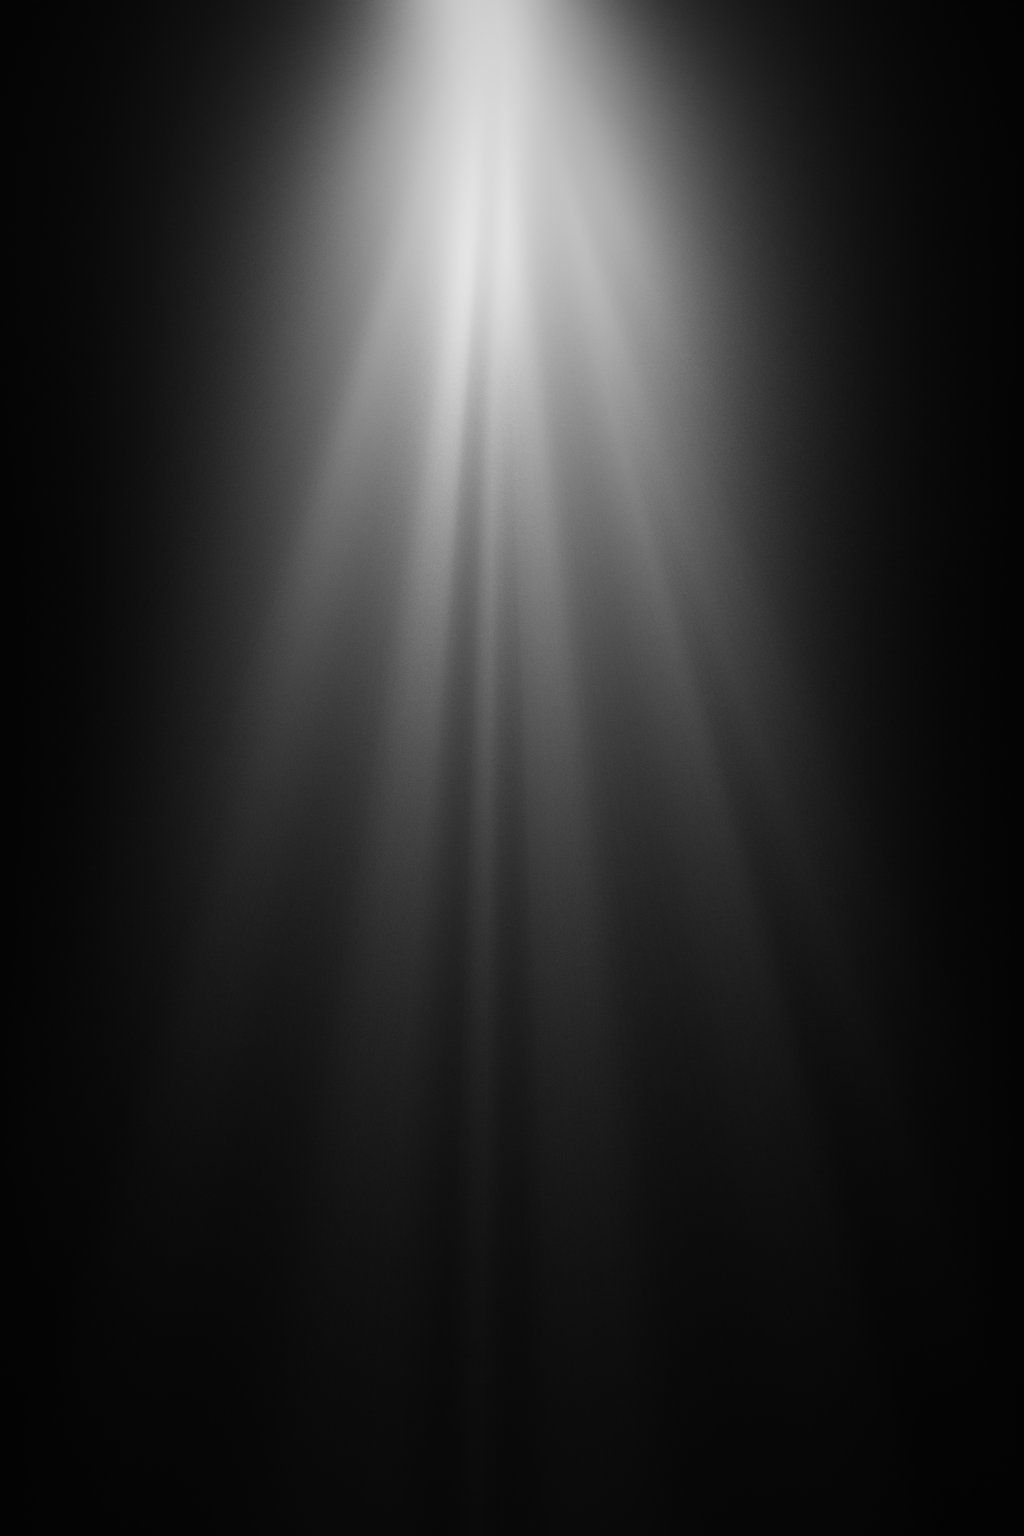 Heavenly Light. Black background wallpaper, Light background image, Black background image